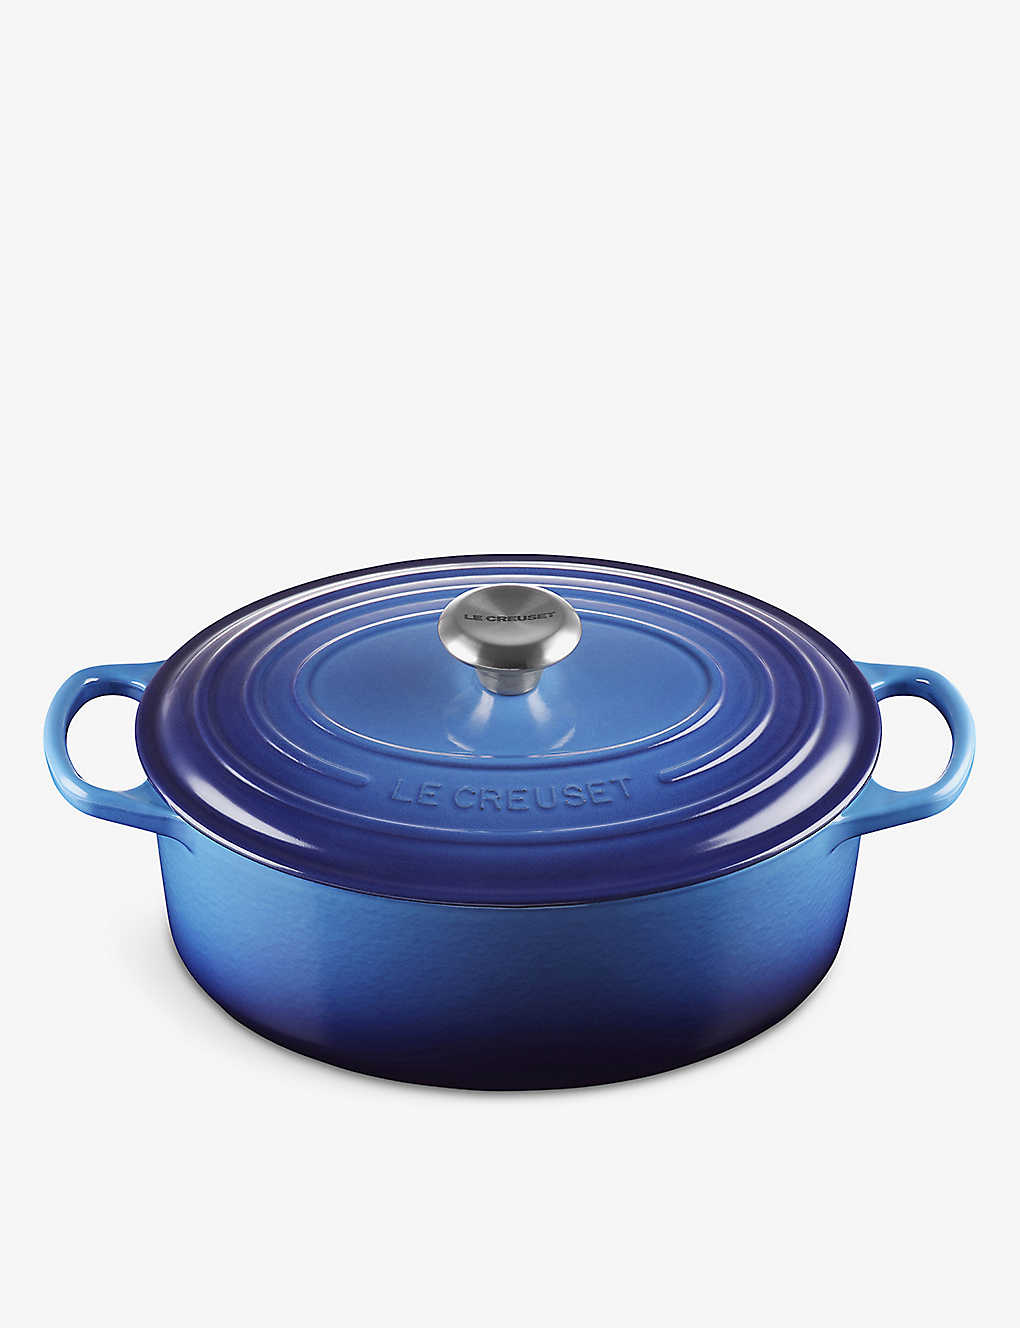 楽天Global HomesLE CREUSET オーバル キャストアイアン キャセロールディッシュ 4.7L Oval cast iron casserole dish 4.7L AZURE BLUE